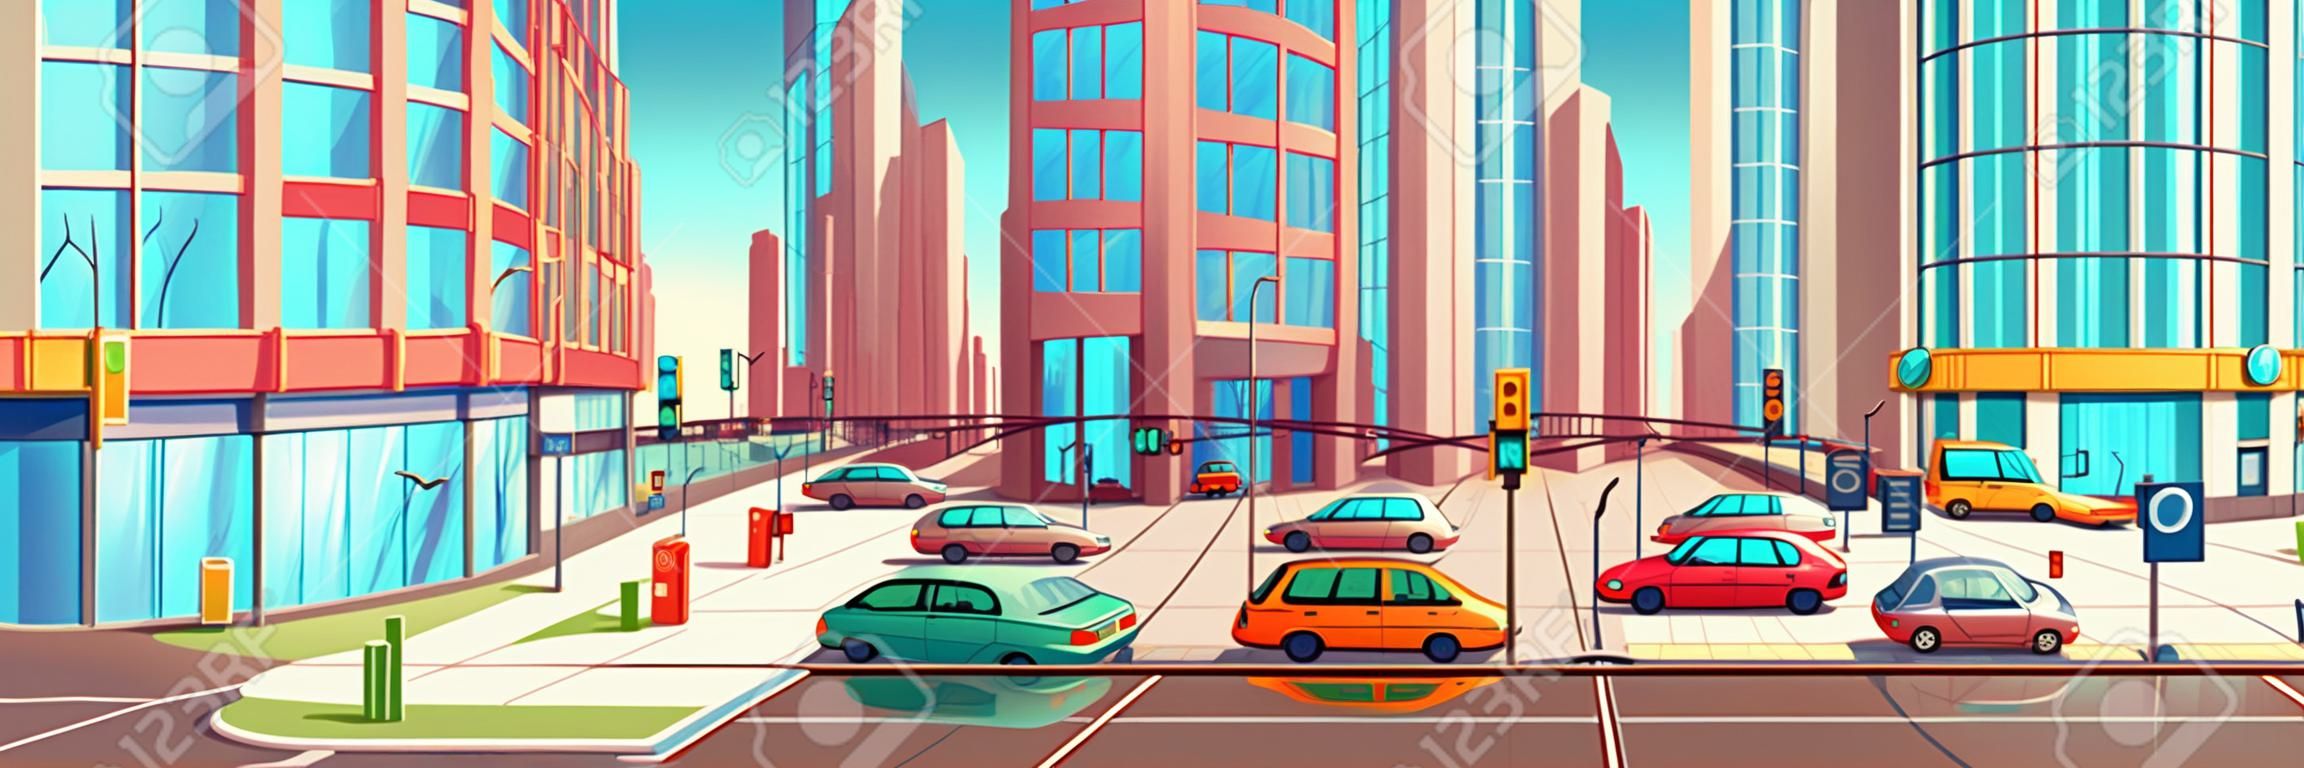 Metrópolis encruzilhada no conceito de vetor de desenho animado de corrida de hora com vitrines de lojas em edifícios de arranha-céus, calçadas, passarela subterrânea de pedestres e carros que vão em duas ruas ilustração da estrada da cidade